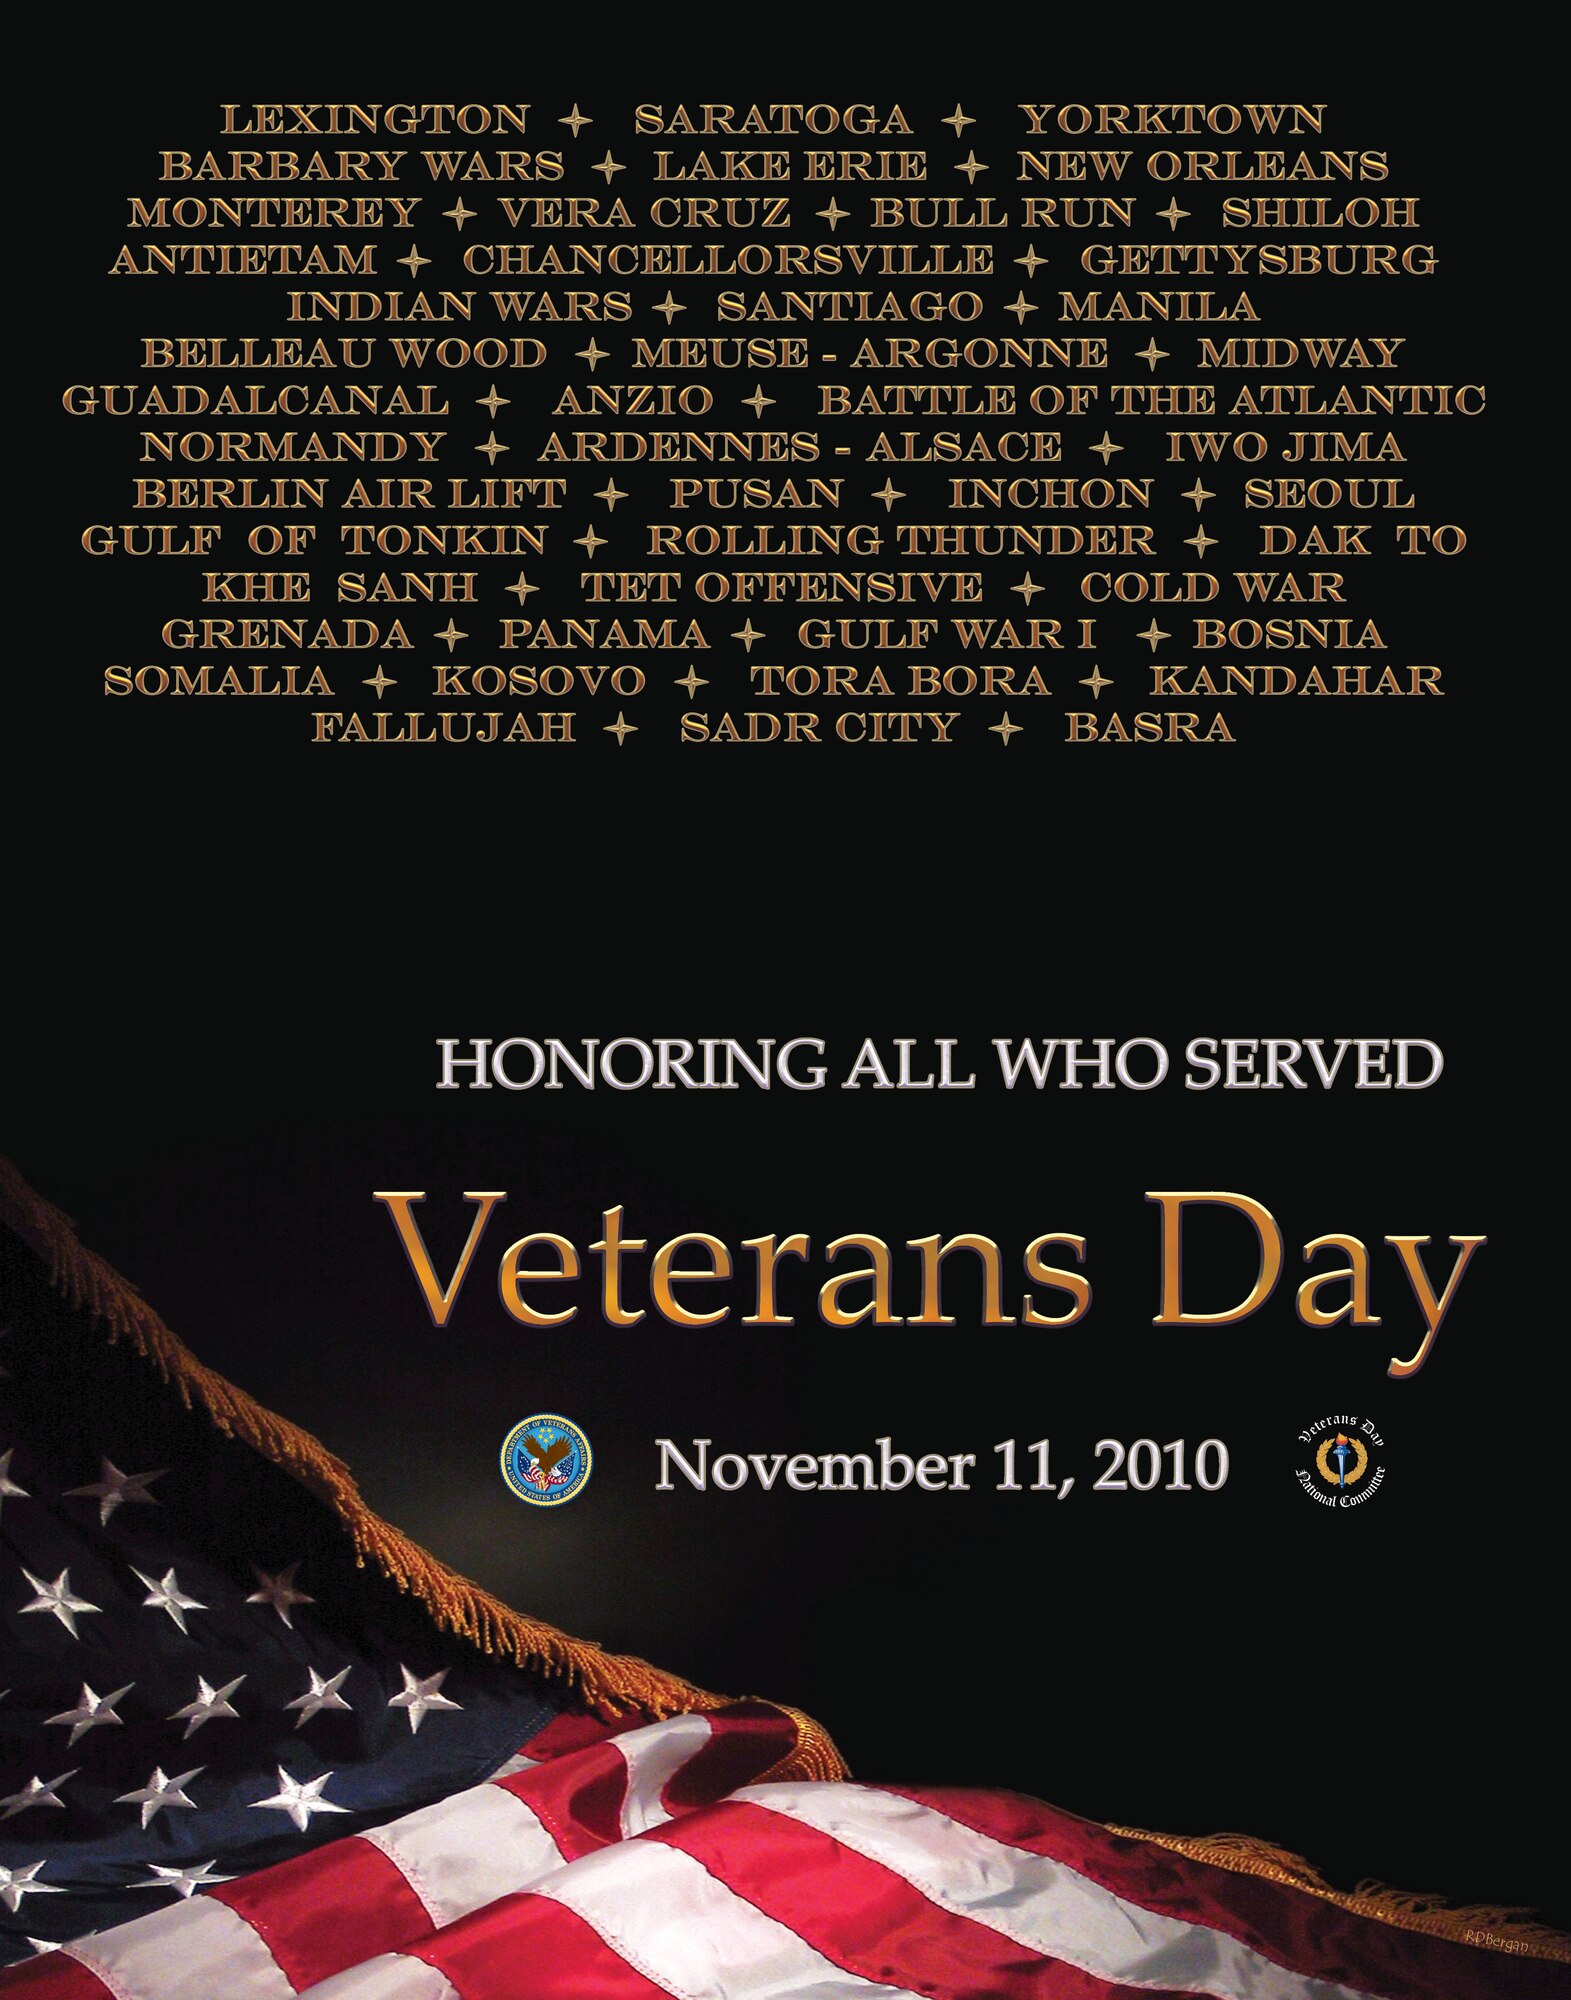 DoD Veterans Day Poster 2010.